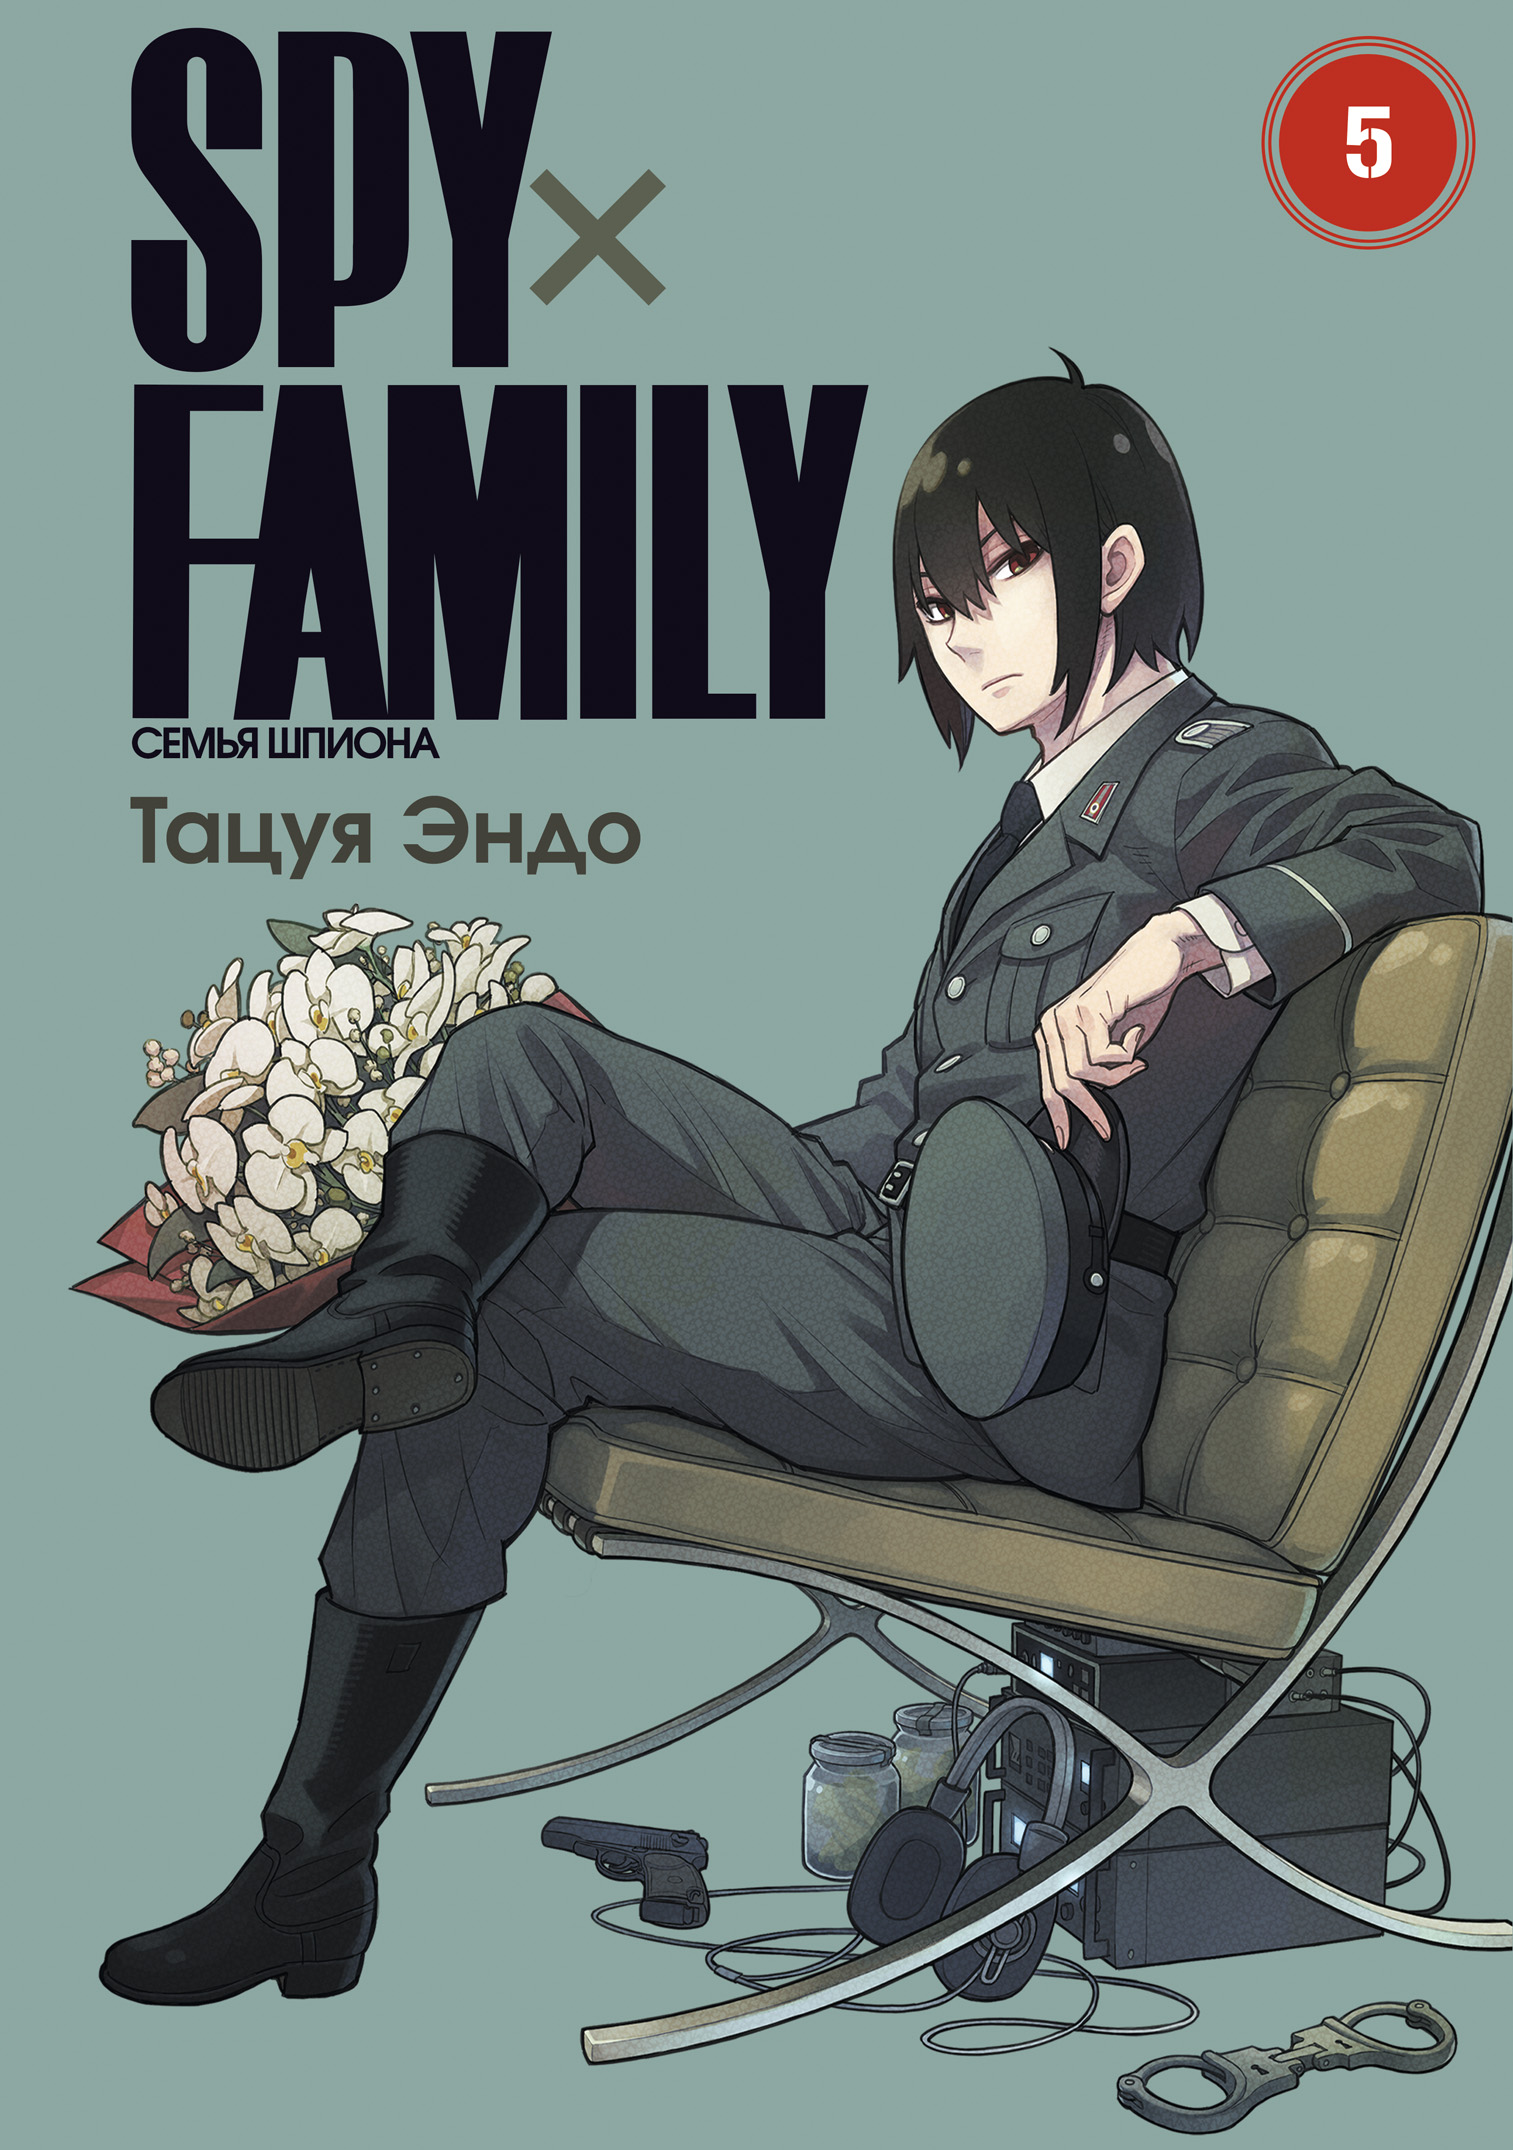 цена Тацуя Эндо SPY x FAMILY: Семья шпиона. Том 5